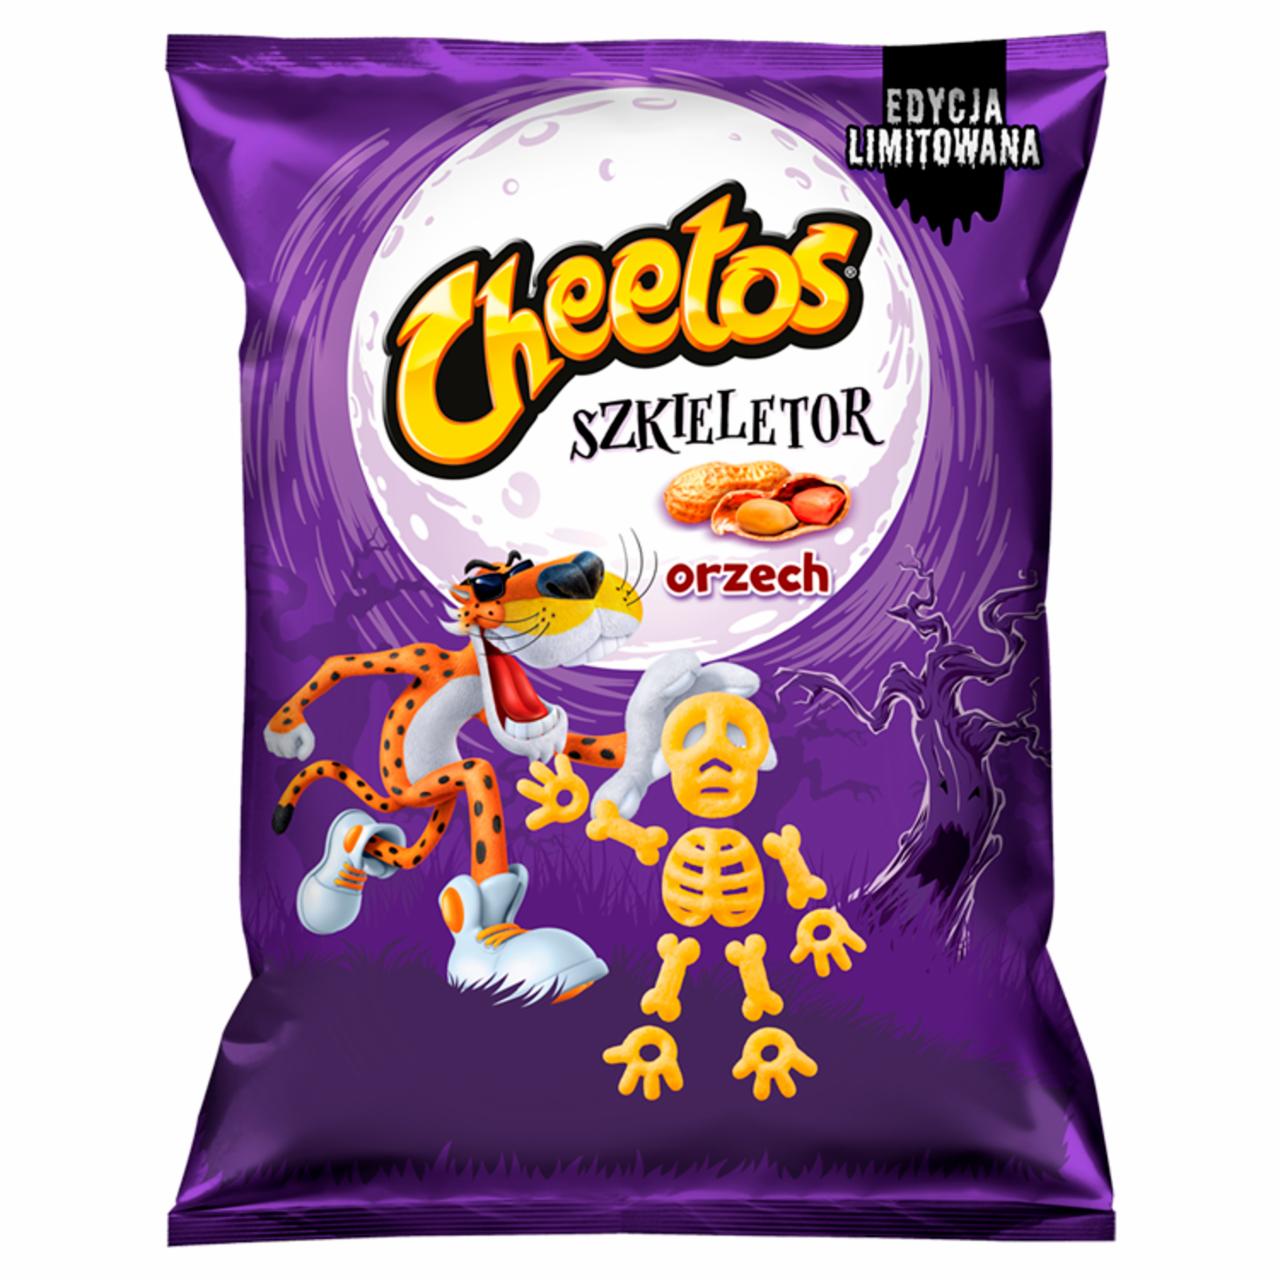 Zdjęcia - Cheetos Szkieletor Chrupki kukurydziane orzechowe 85 g